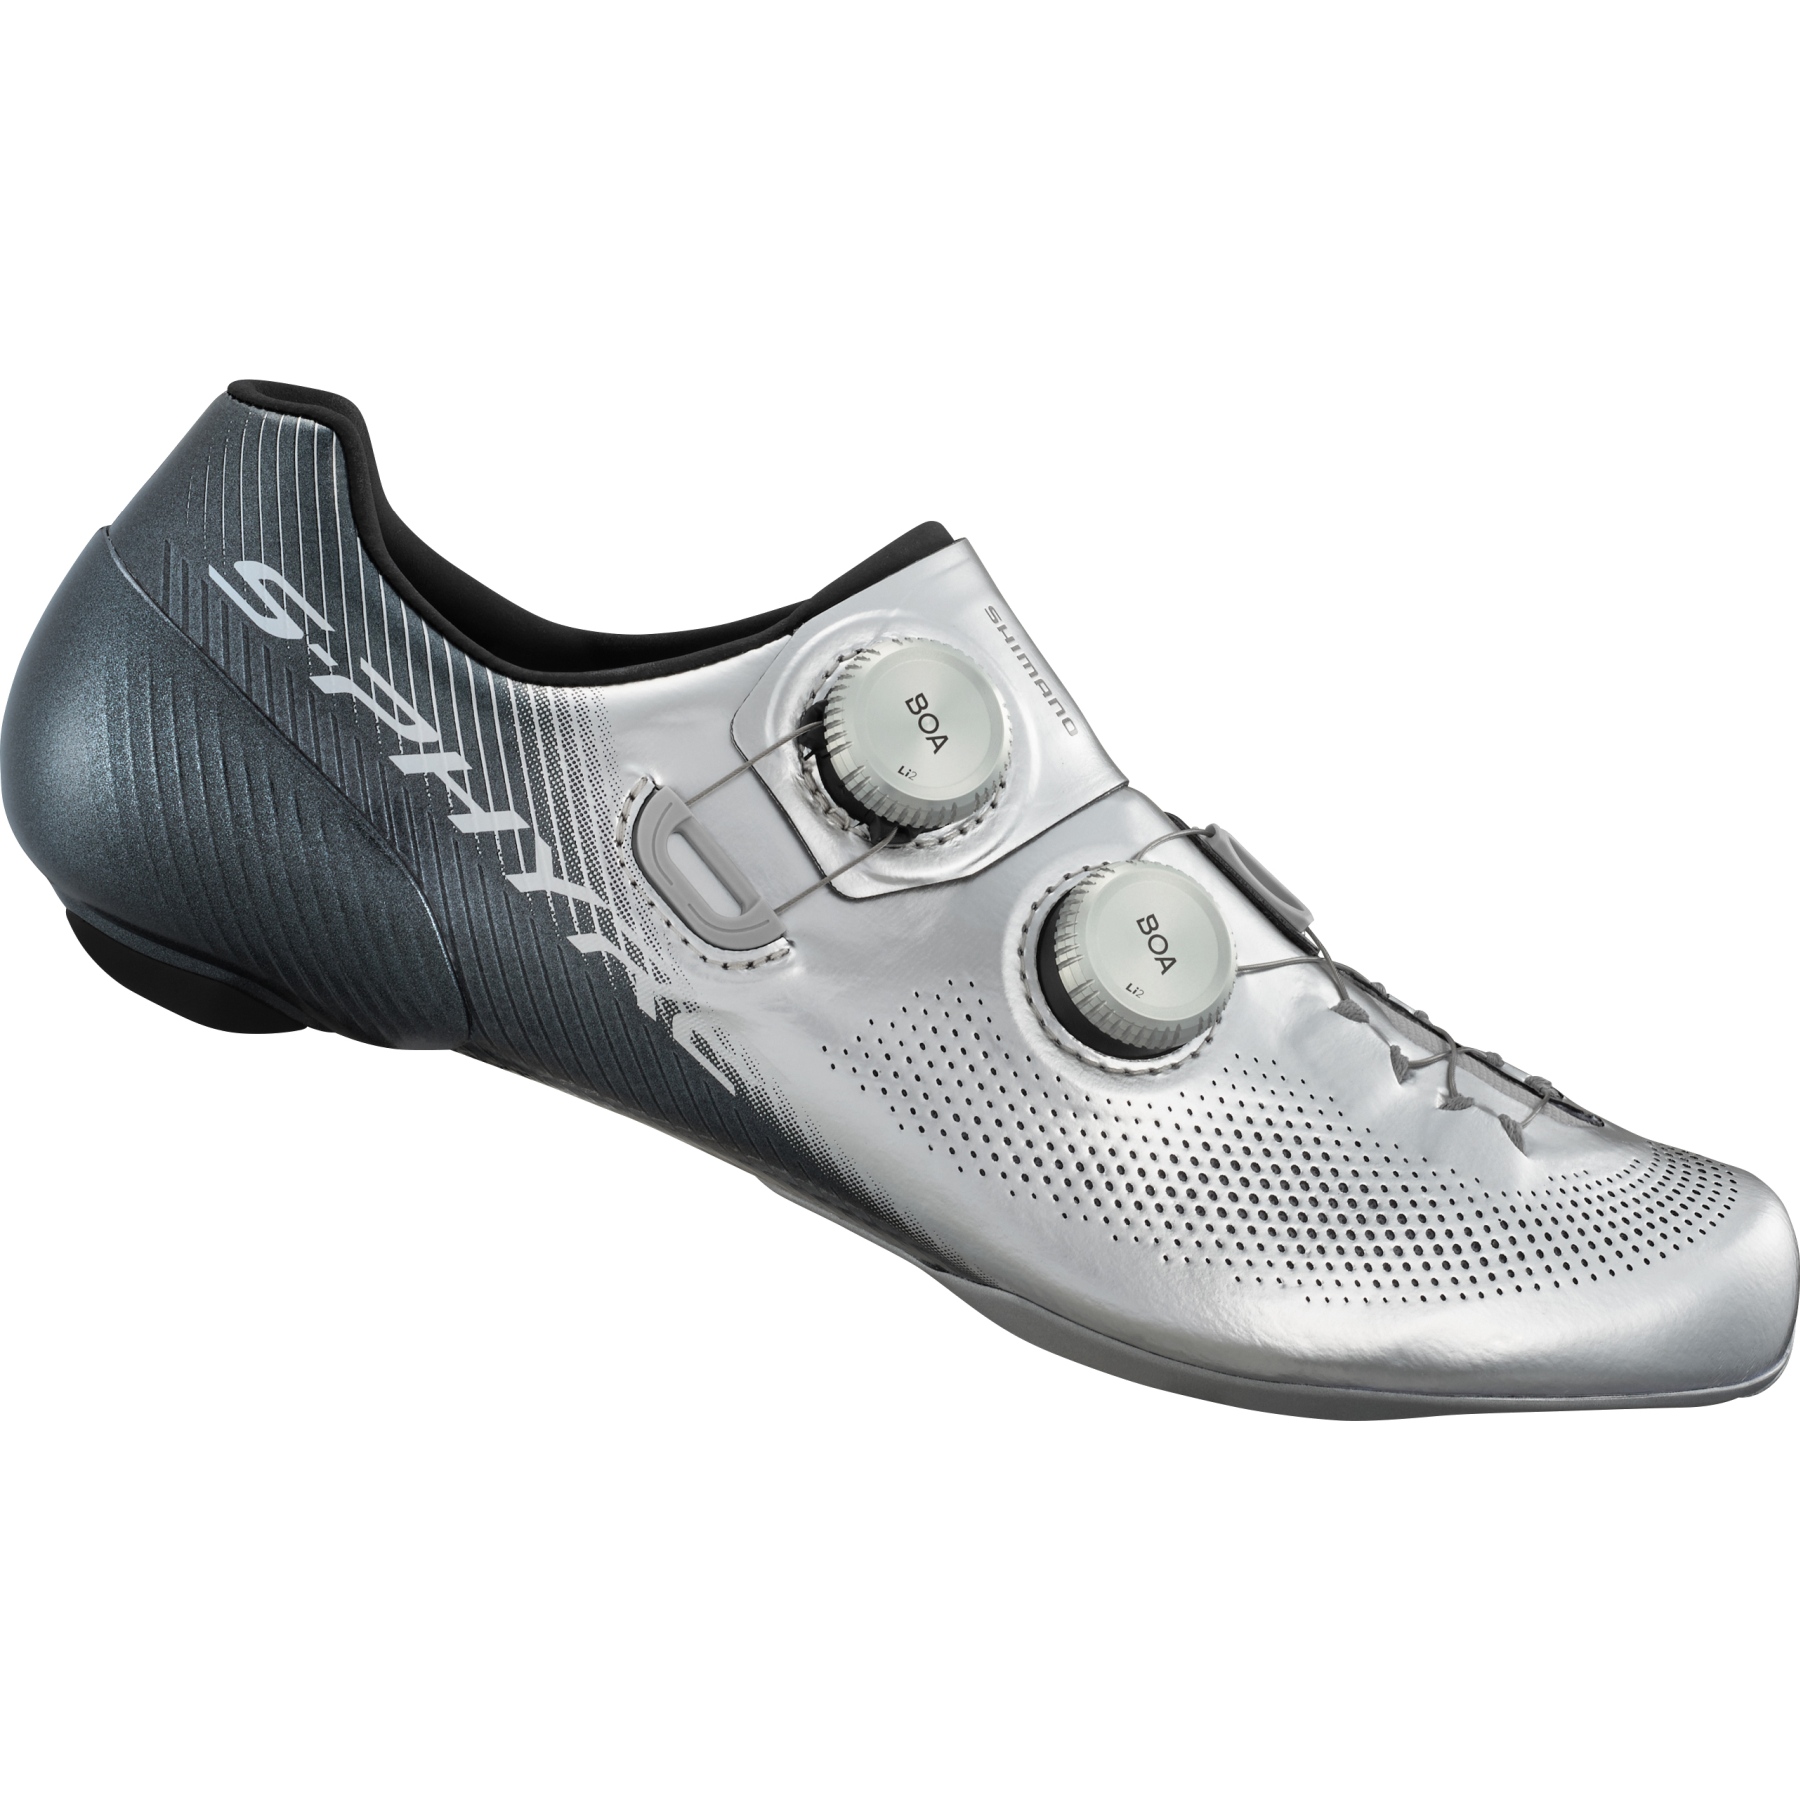 Produktbild von Shimano S-Phyre SH-RC903S Rennrad Schuhe - Sonderedition - silber